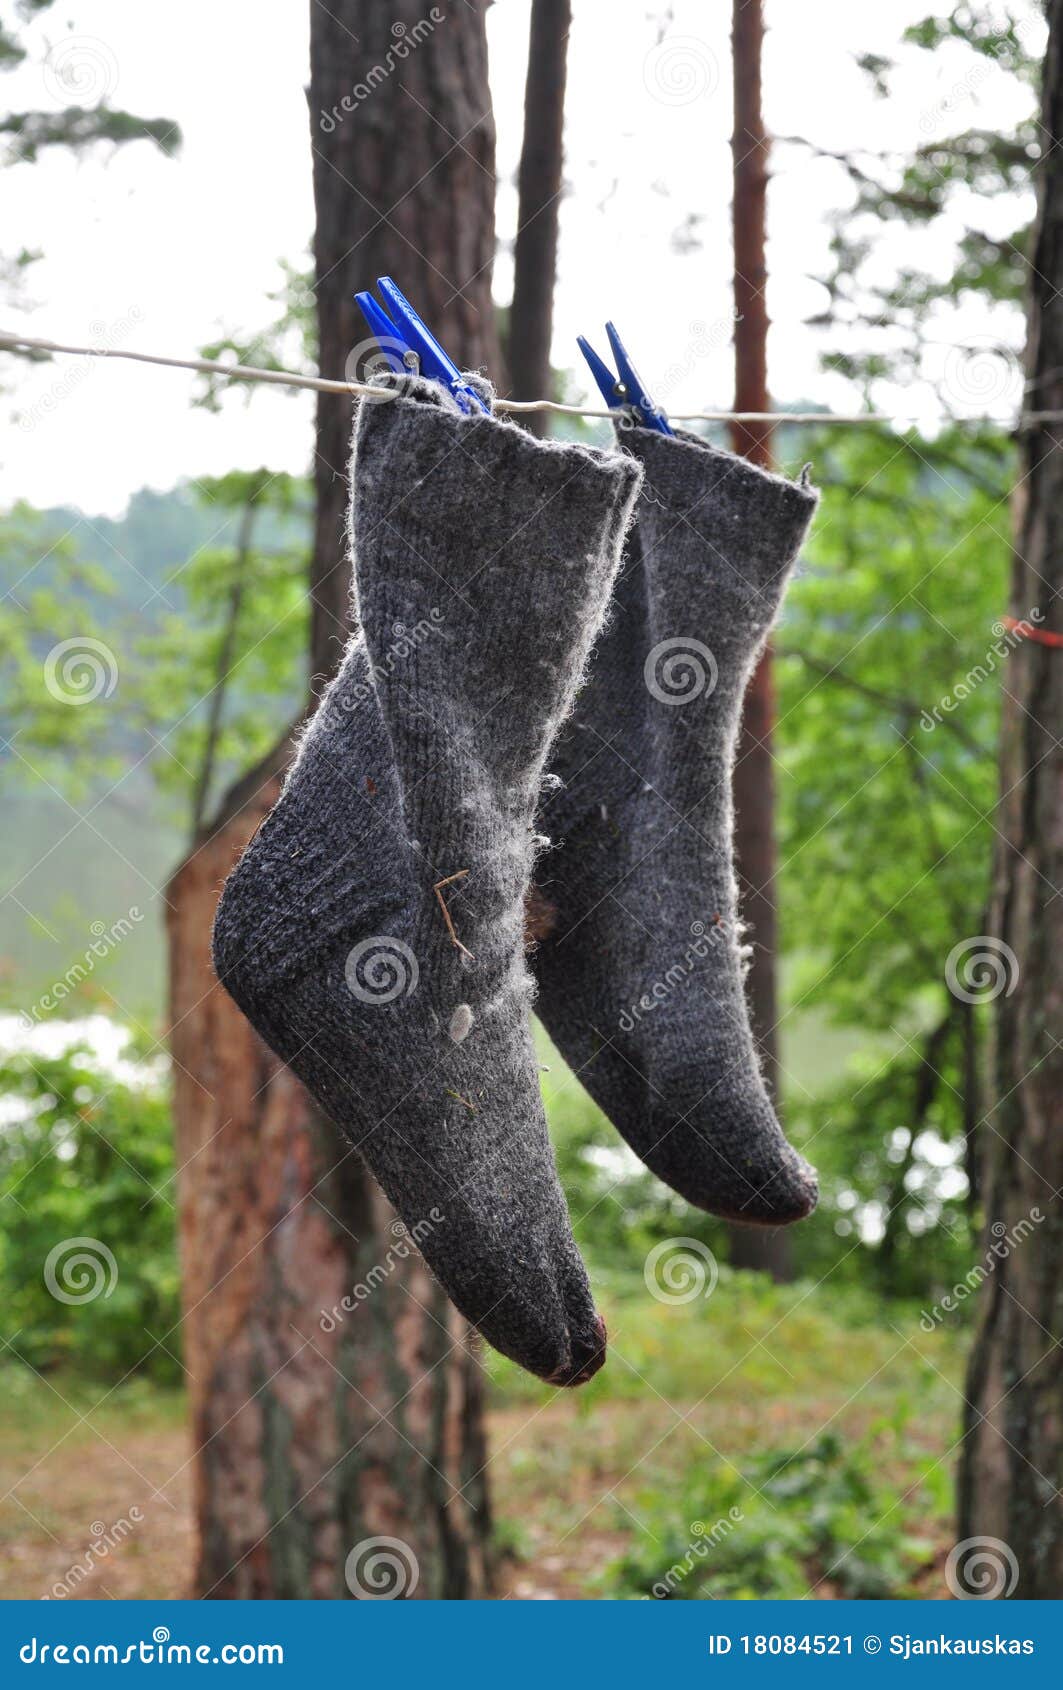 Piepen vergaan Grondig Natte Sokken Die Op Een Kabel Drogen Stock Afbeelding - Image of sokken,  droog: 18084521